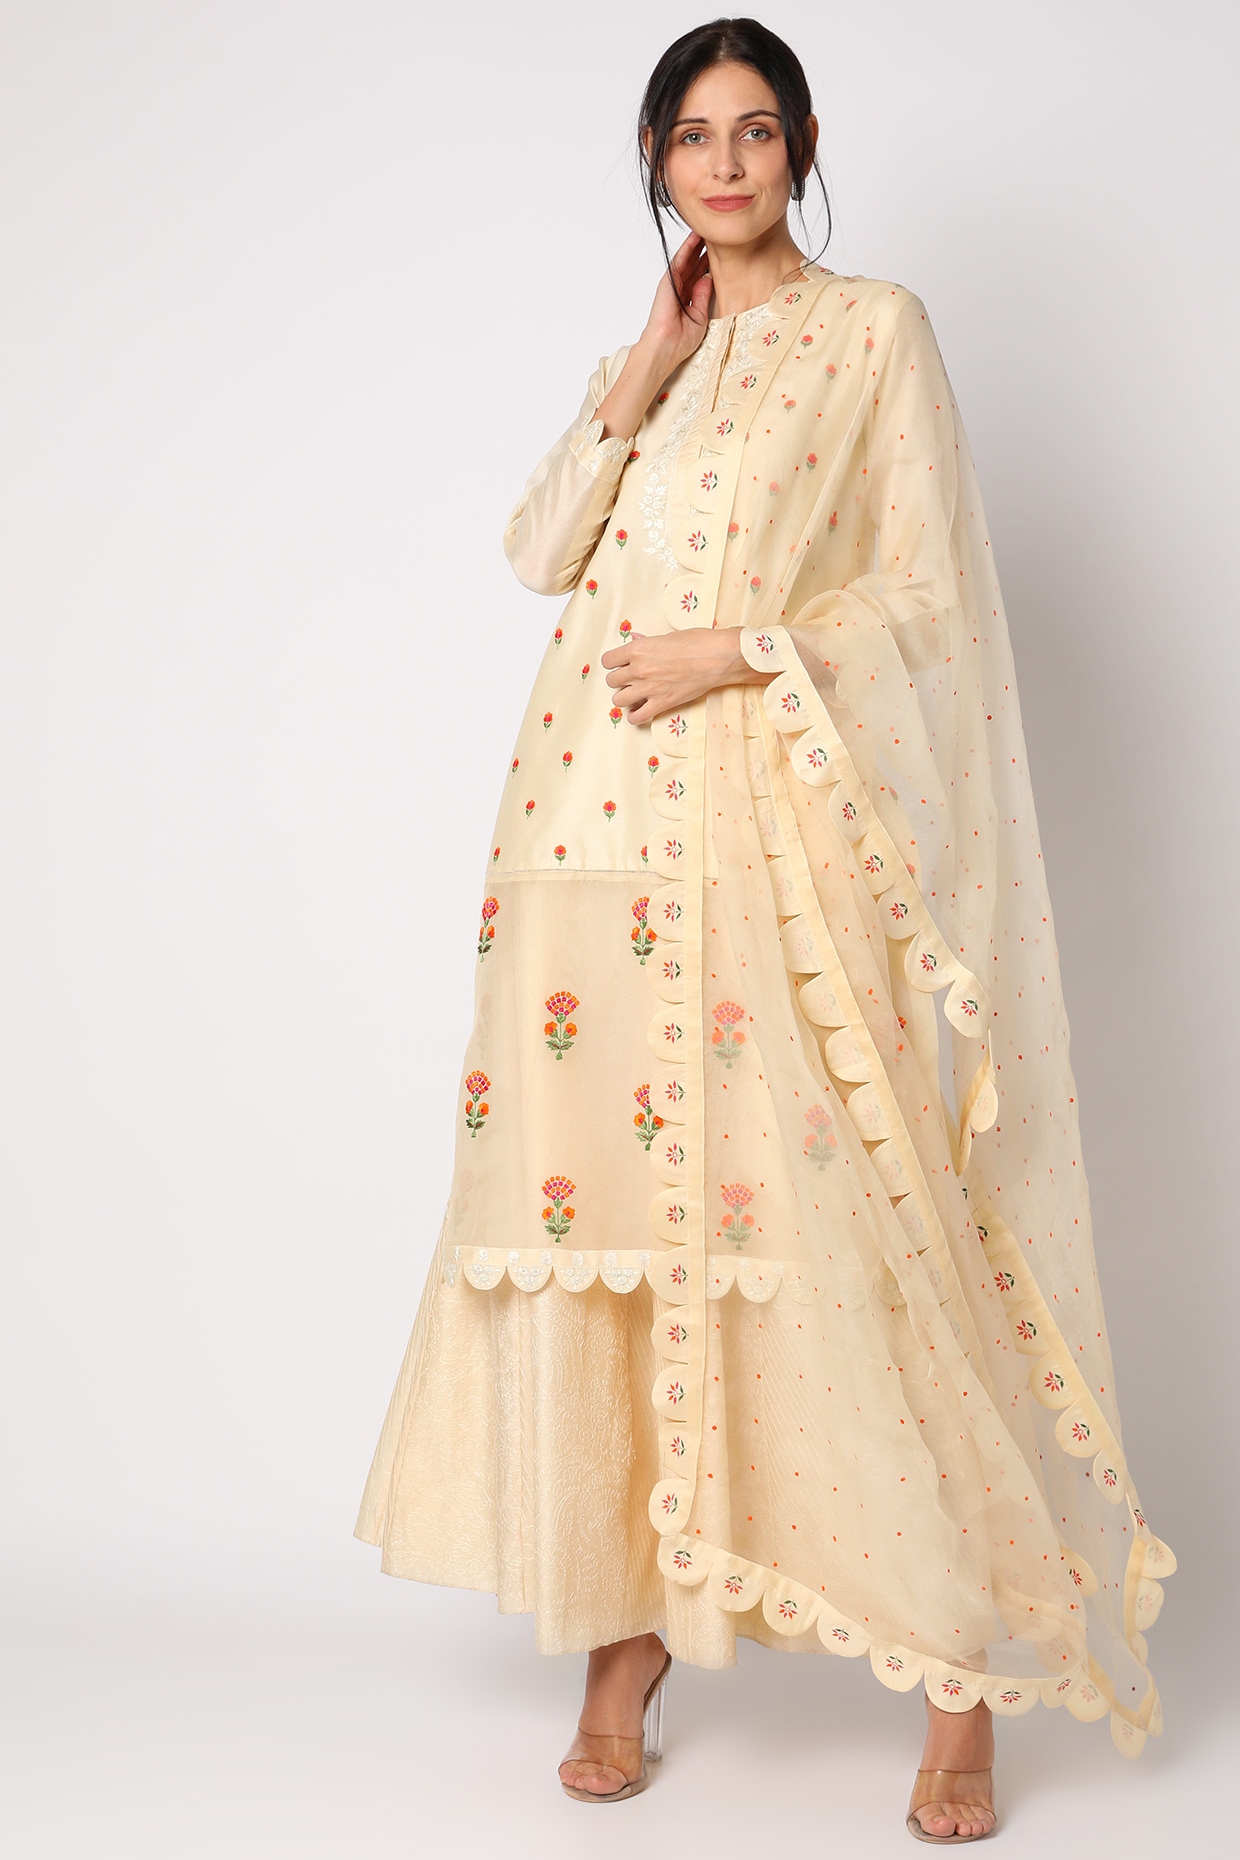 Banarasi Silk Salwar Kameez | Buy Banarasi Suits Online